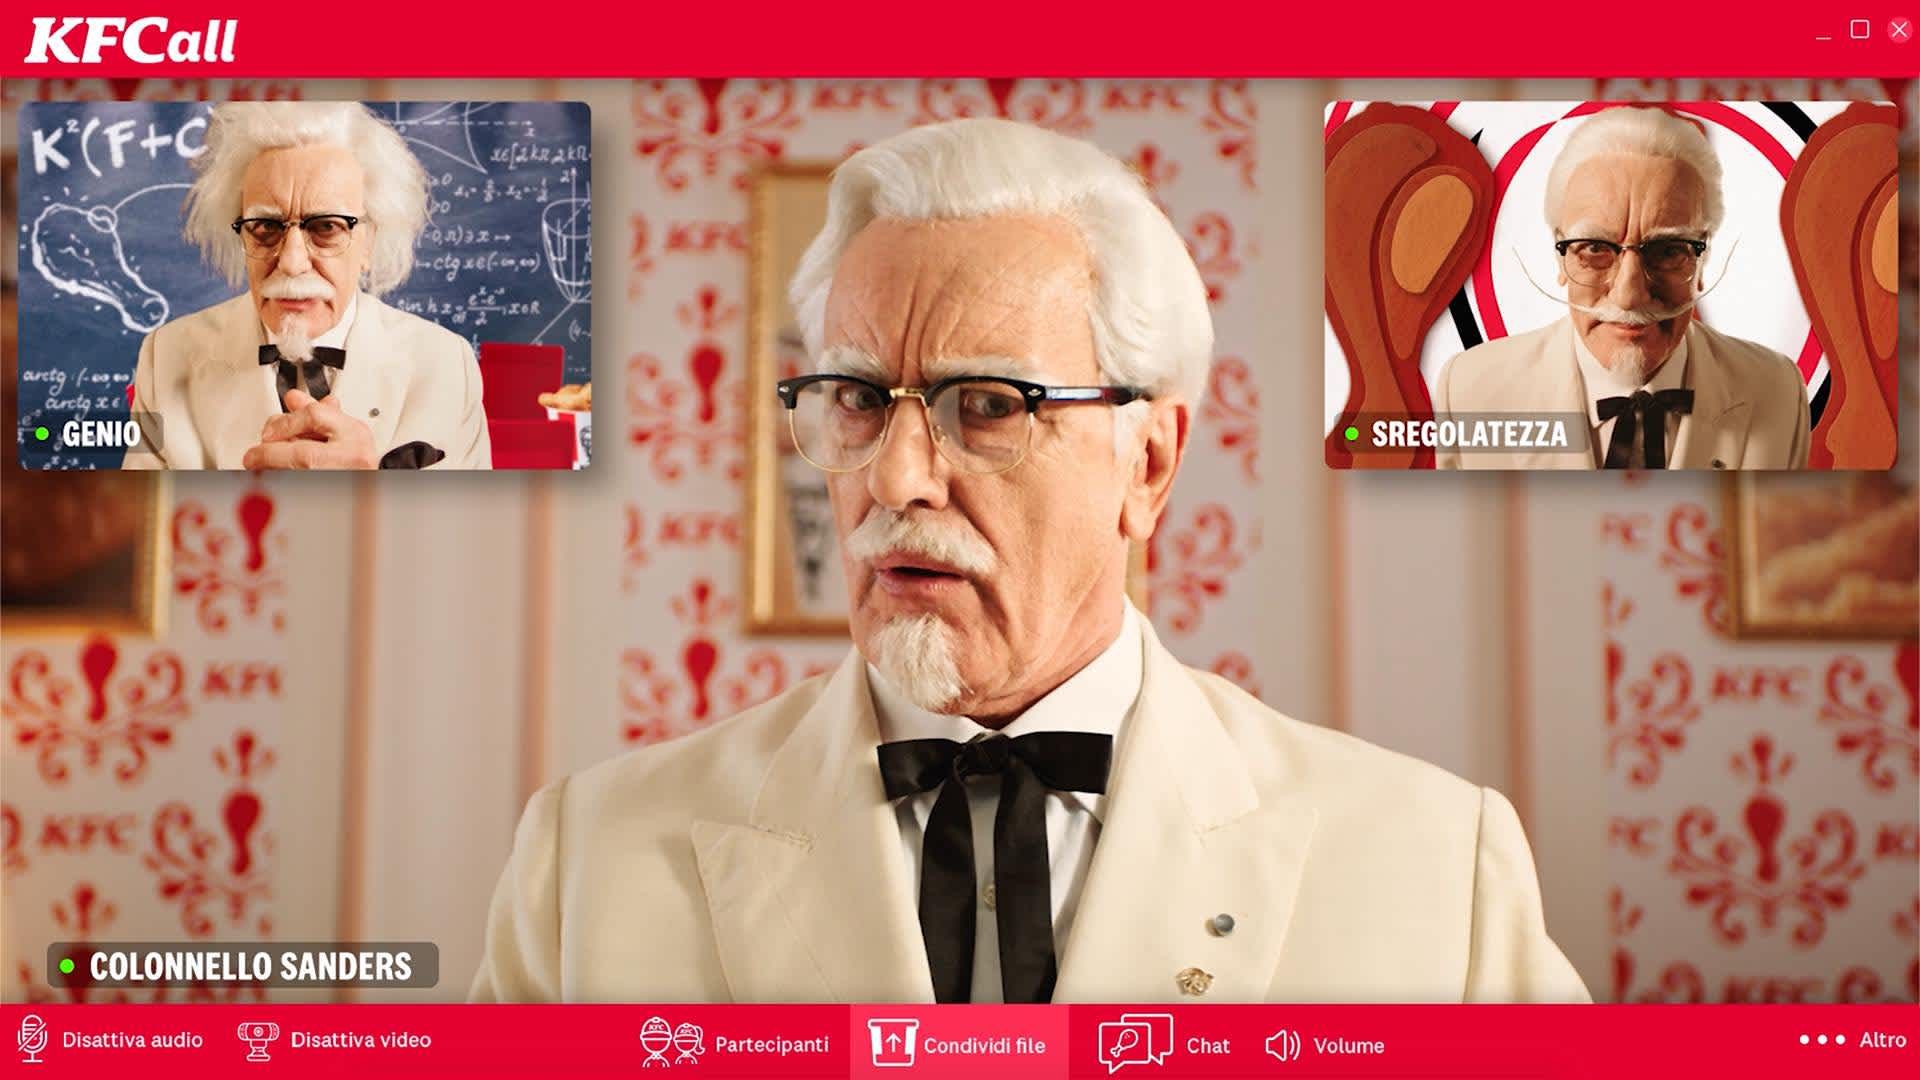 Um quadro de um anúncio do KFC da década de 2020 apresentando o Coronel Sanders e dois alter-egos